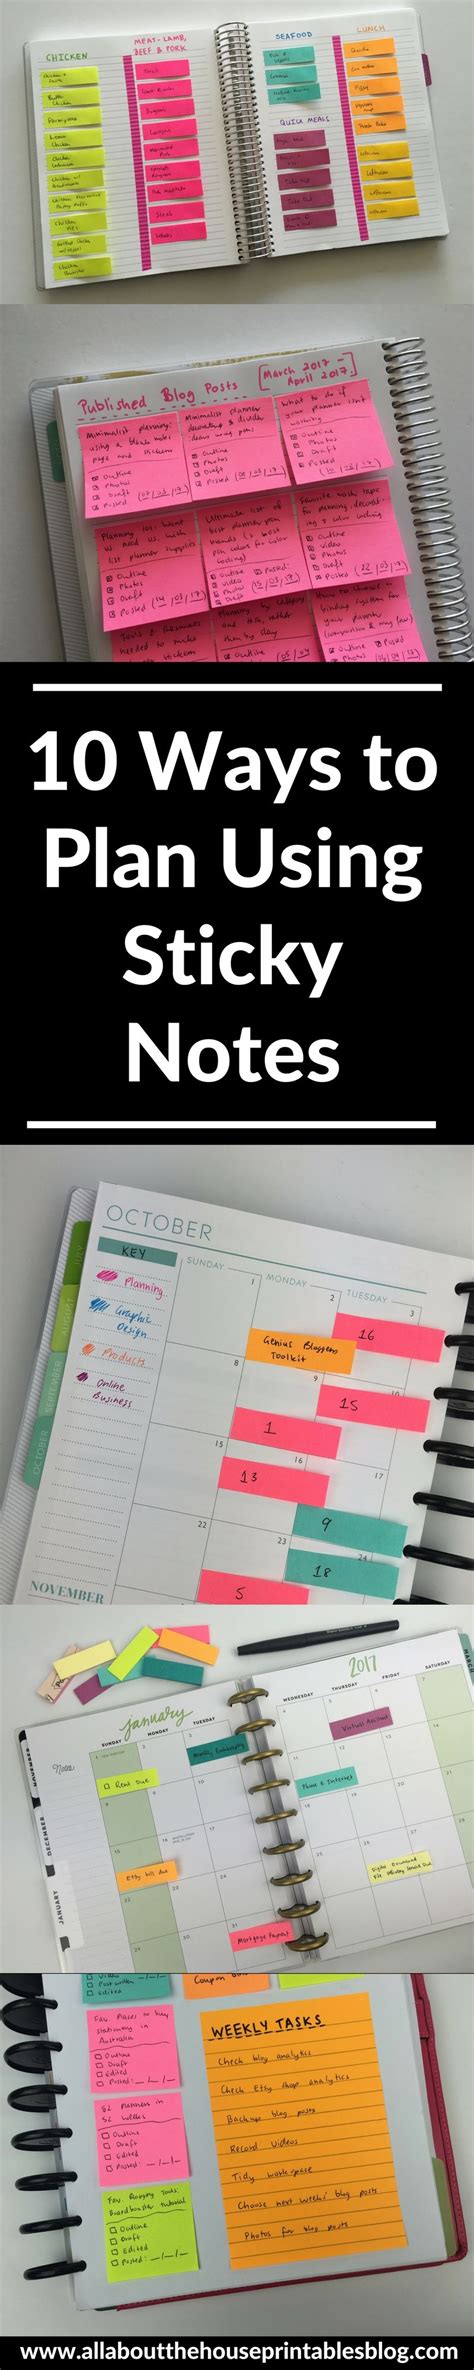 10 Ways To Plan Using Sticky Notes Sticky Notes Sticky Note Planner